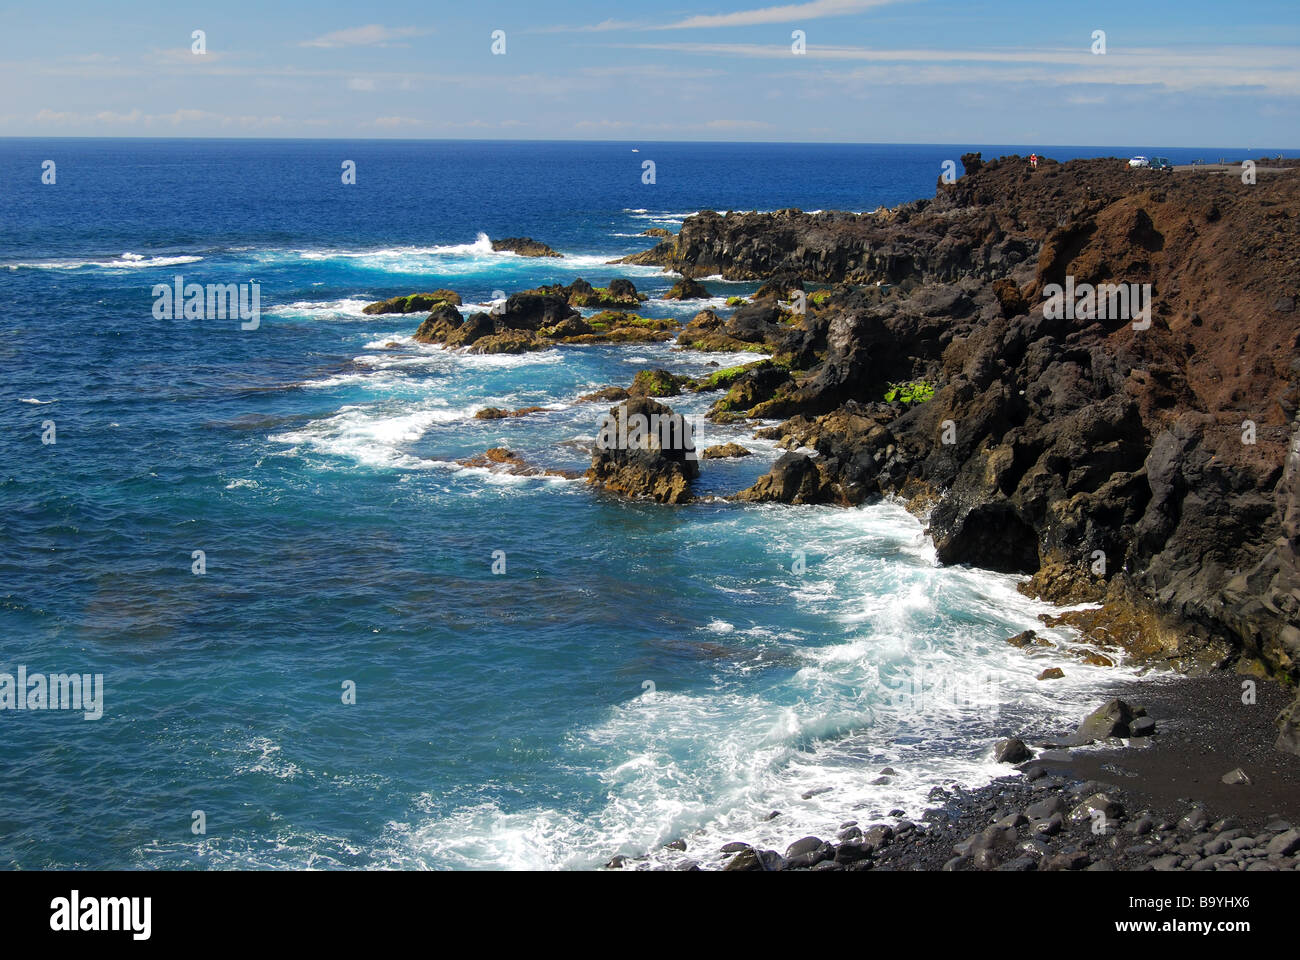 Rocky coastline, Punta de Volcan, Lanzarote, Canary Islands, Spain Stock Photo